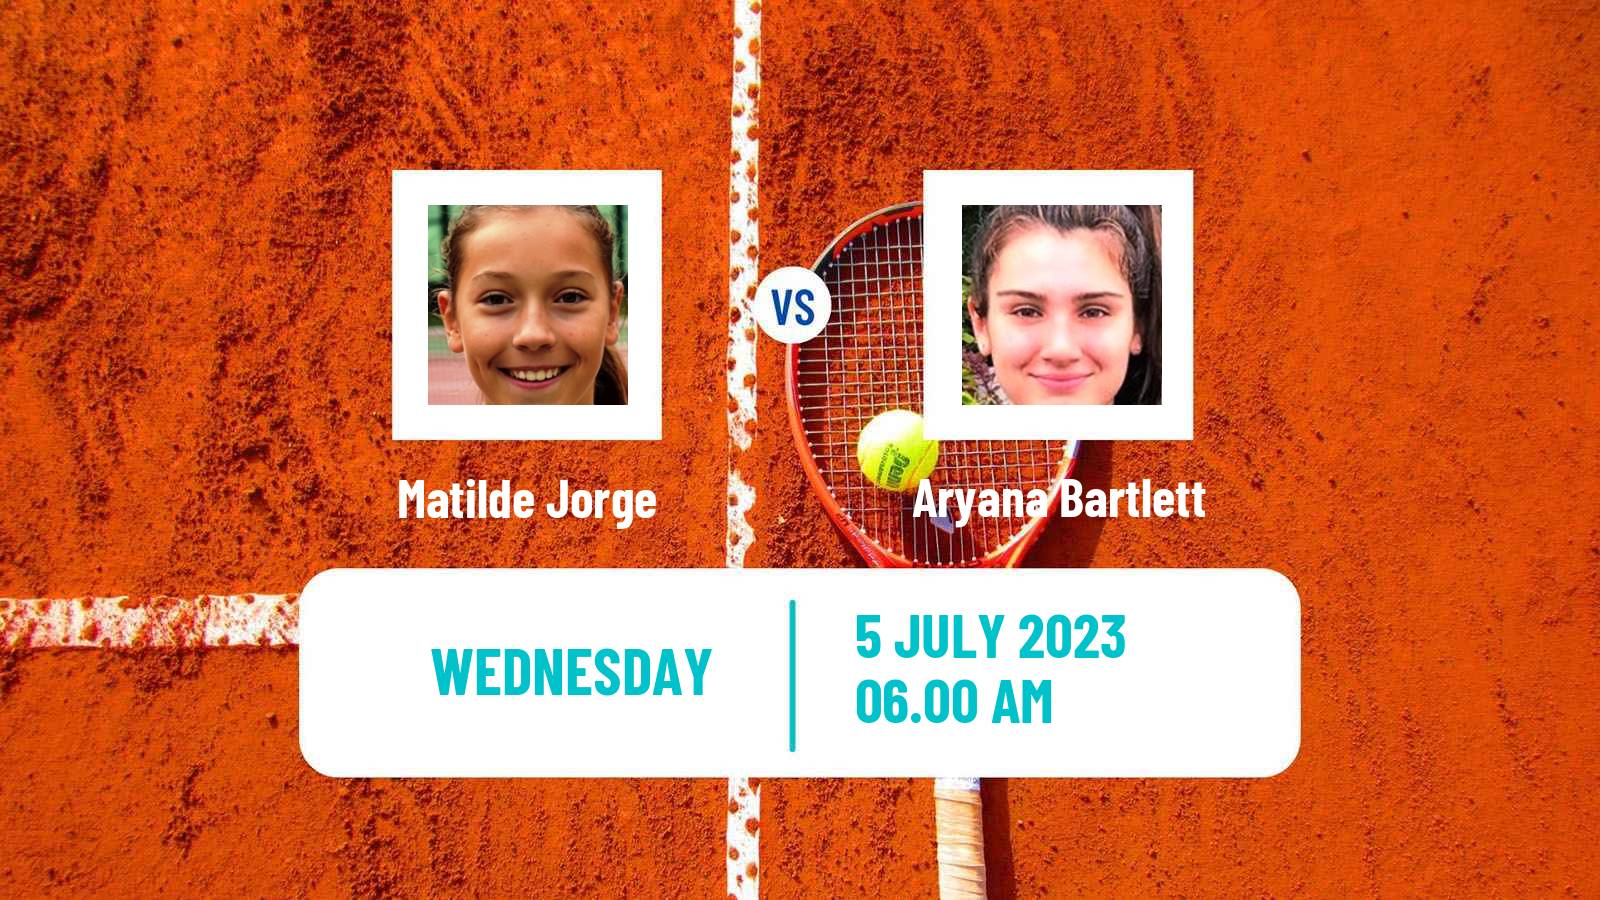 Tennis ITF W25 Cantanhede Women Matilde Jorge - Aryana Bartlett